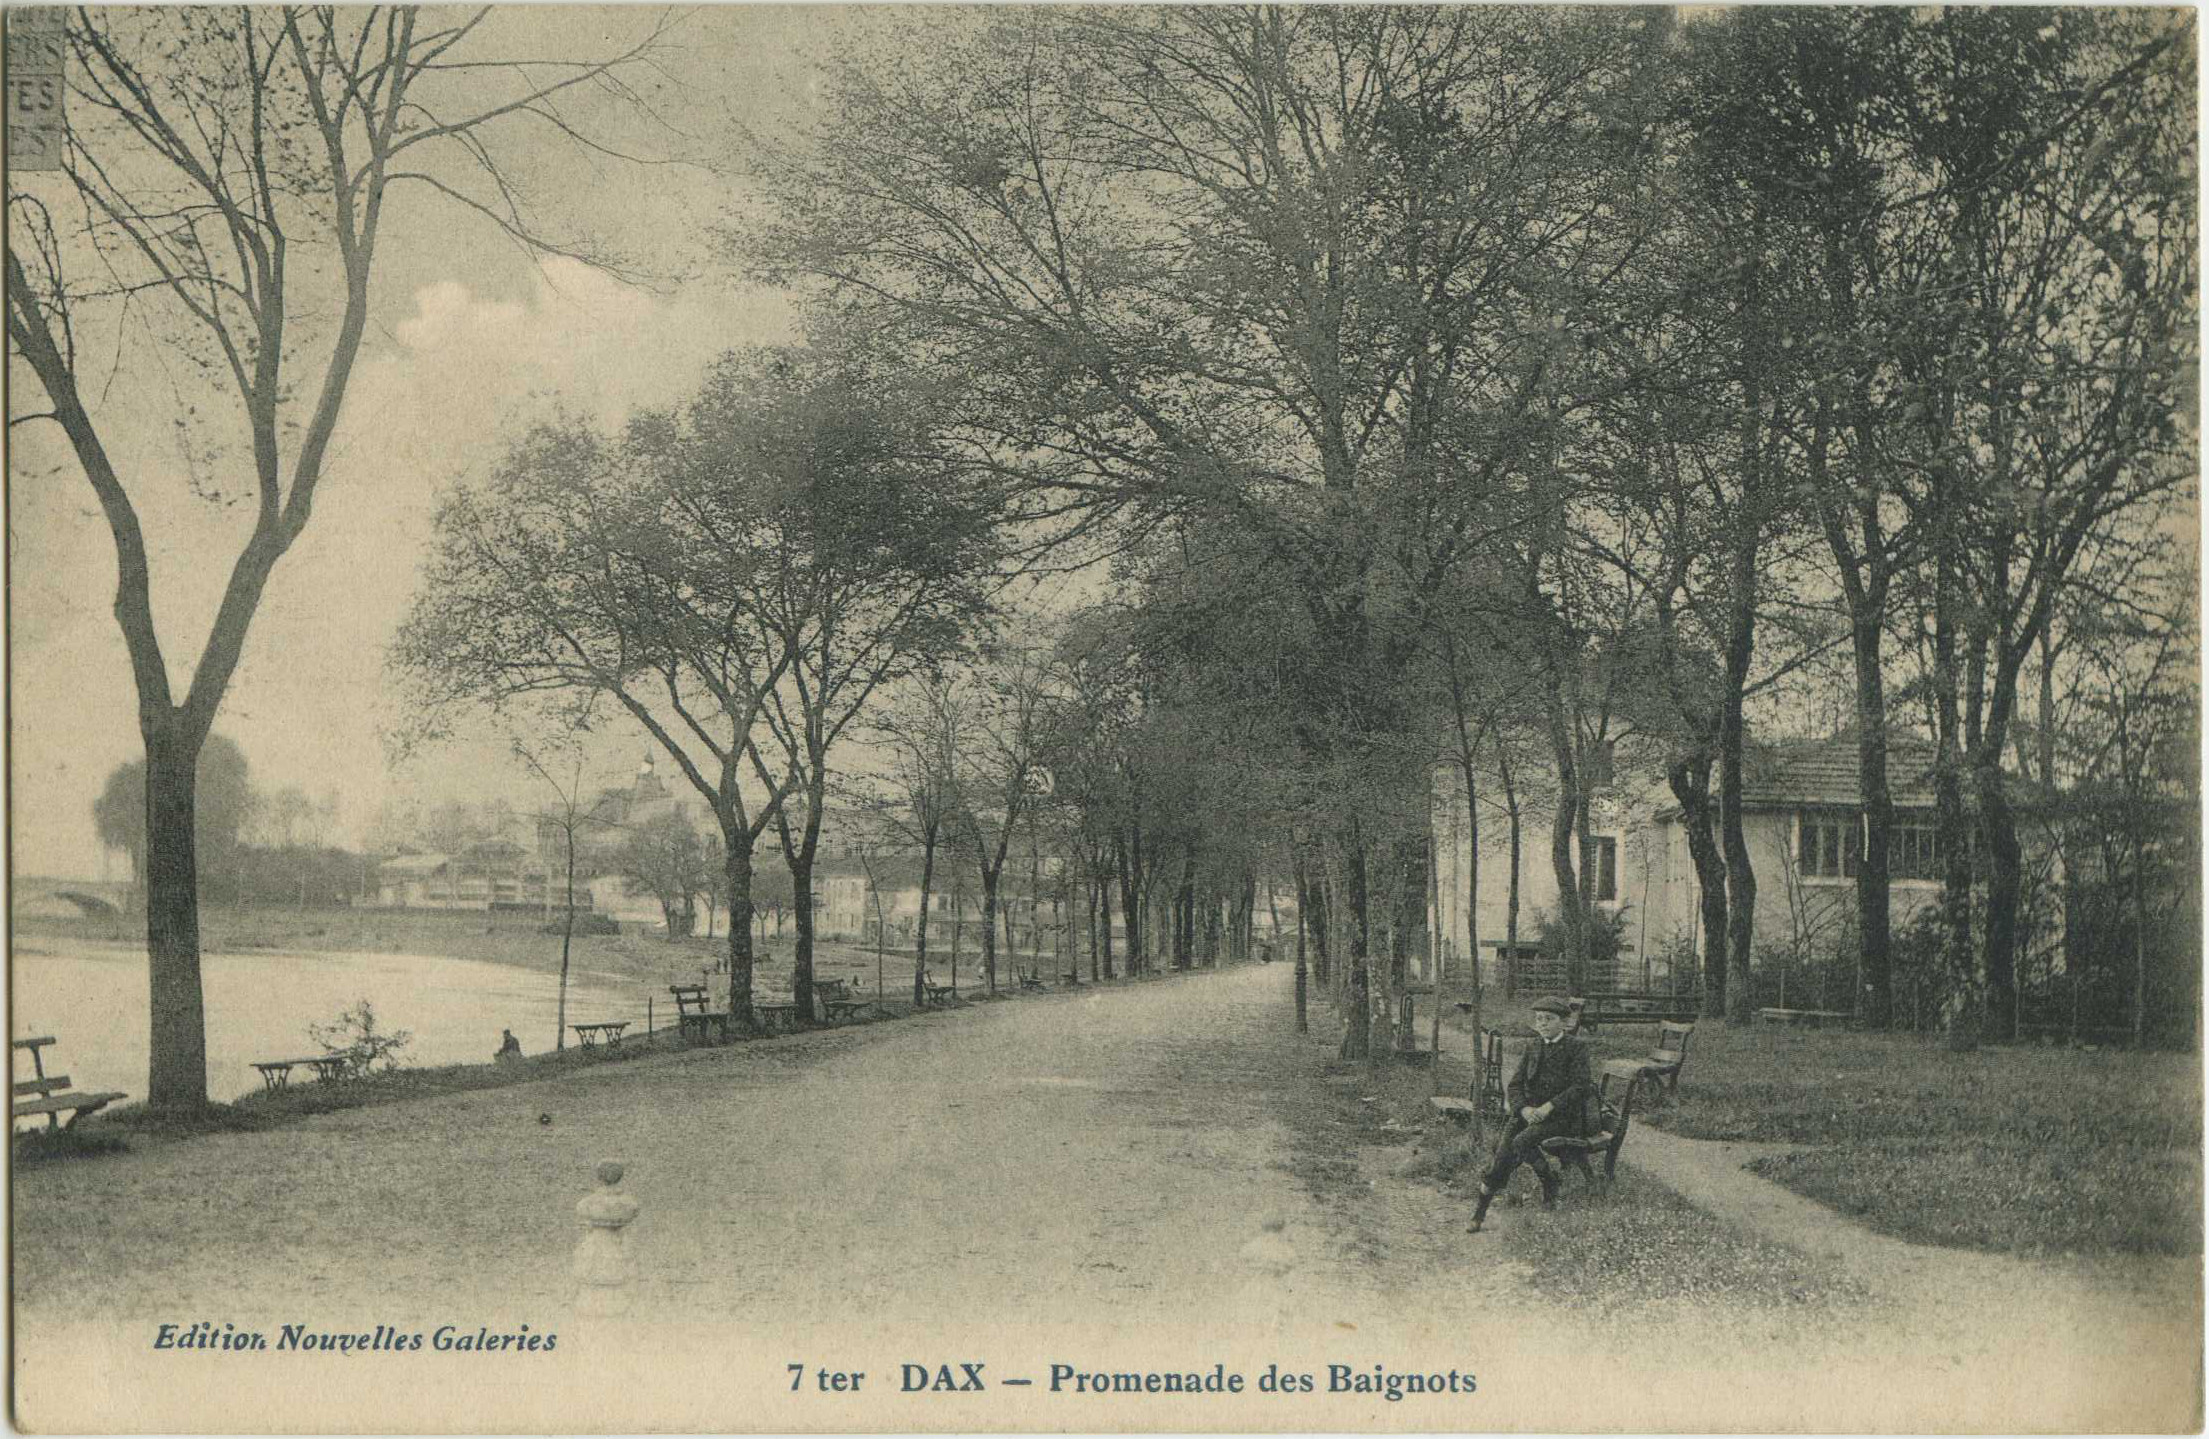 Dax - Promenade des Baignots